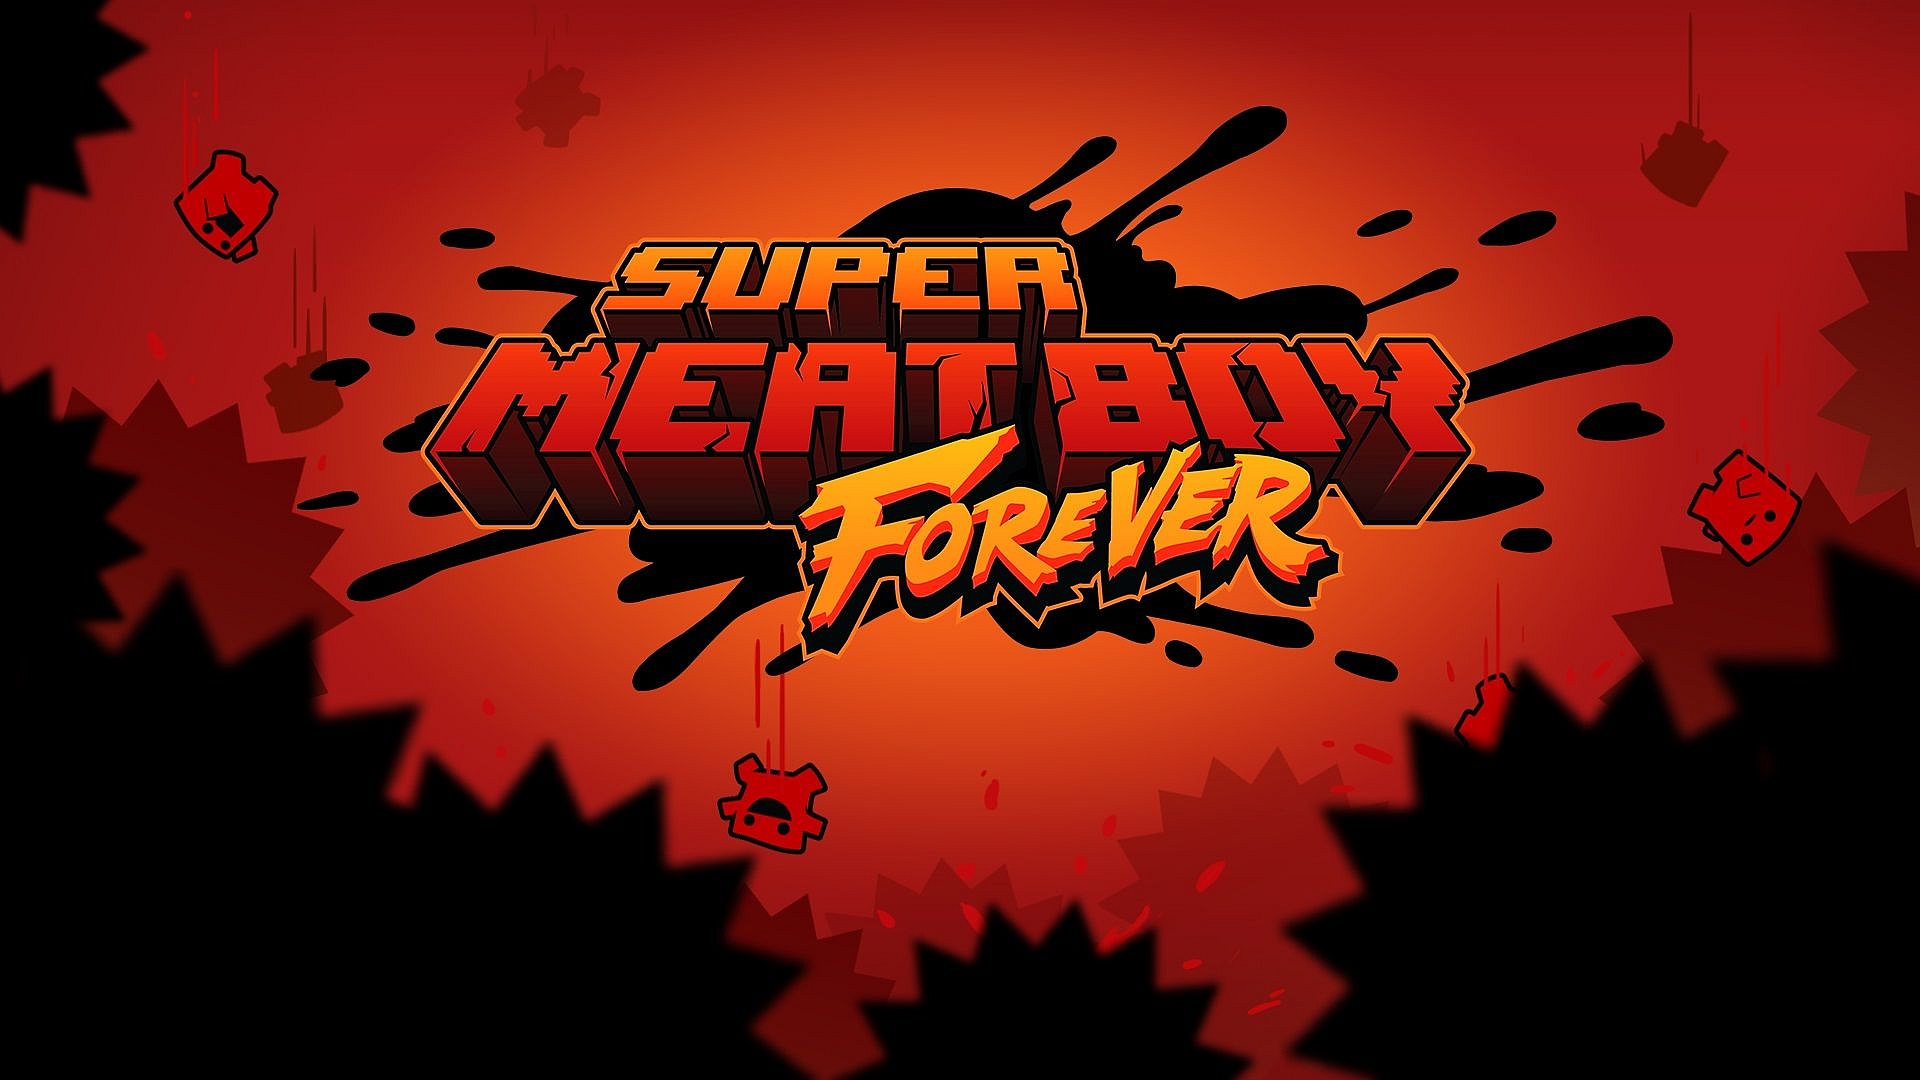 Super Meat Boy für immer